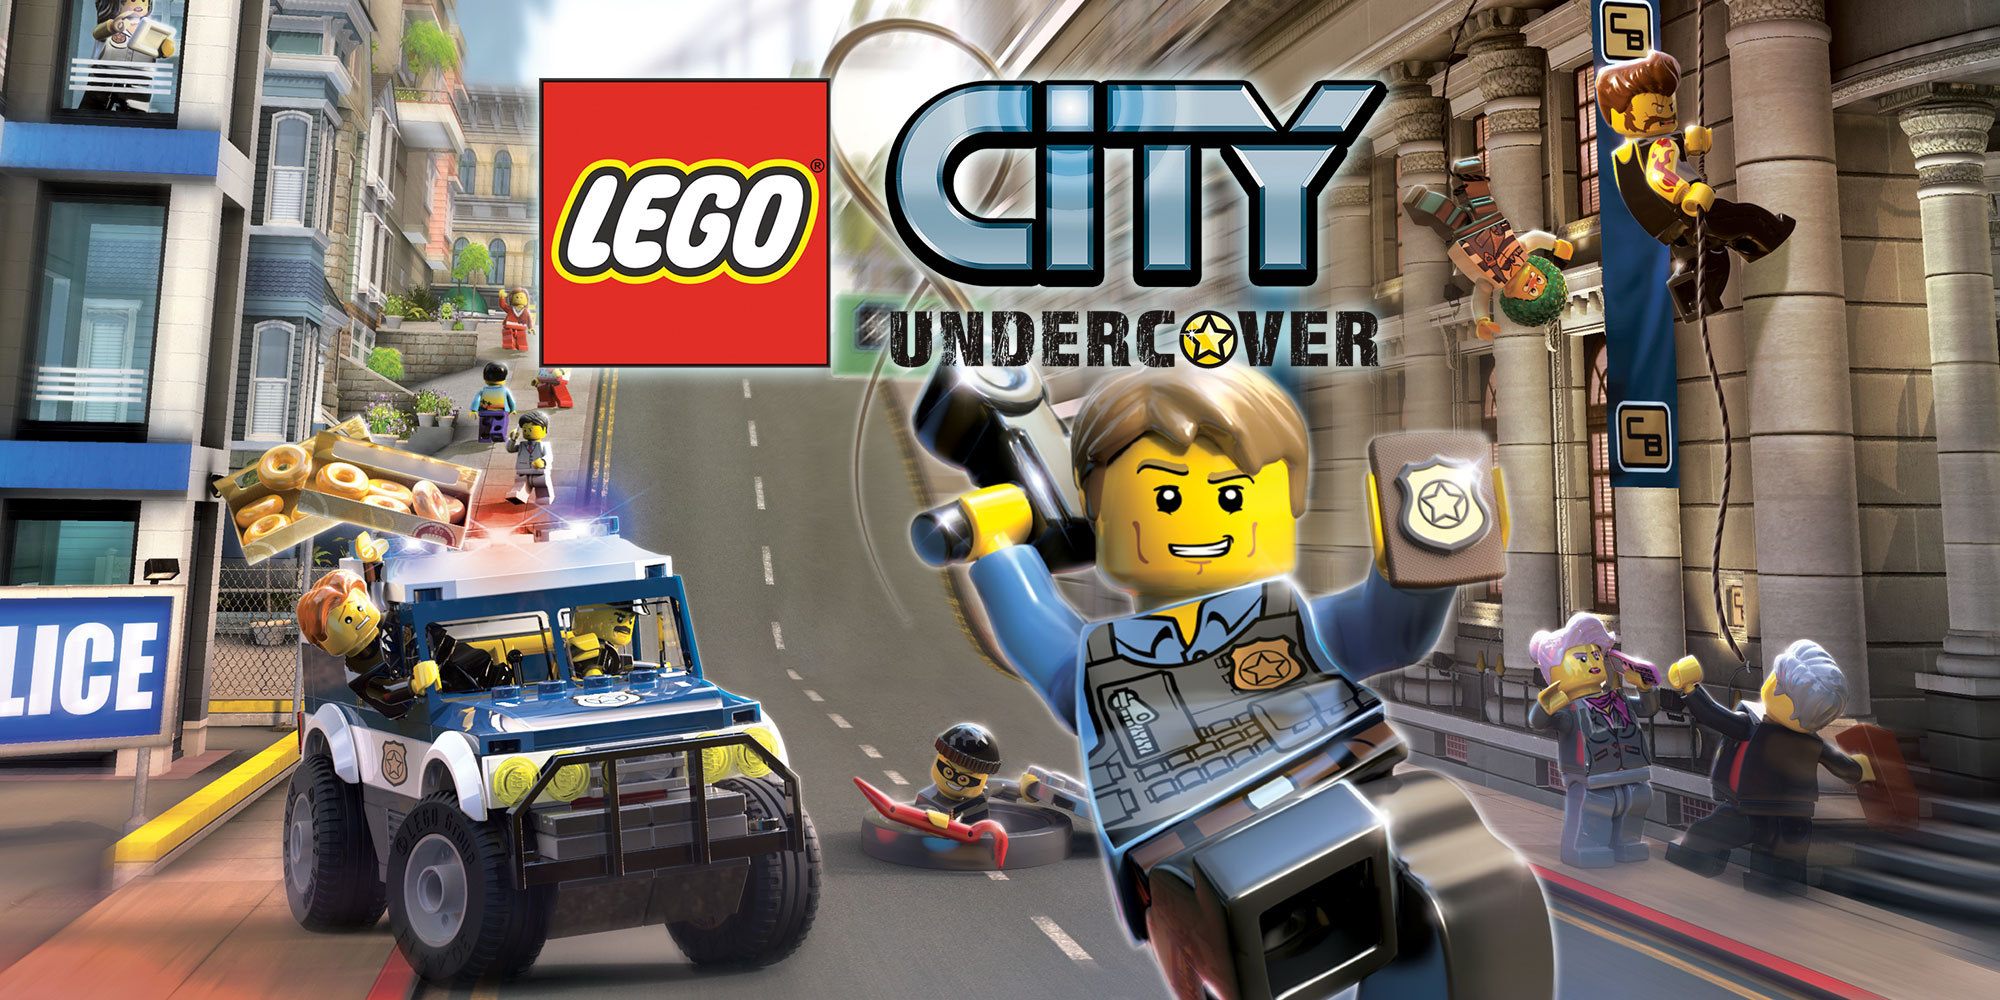 tilbagemeldinger Nægte aflange Lego City Undercover Builds a Co-Op Mode - MonsterVine